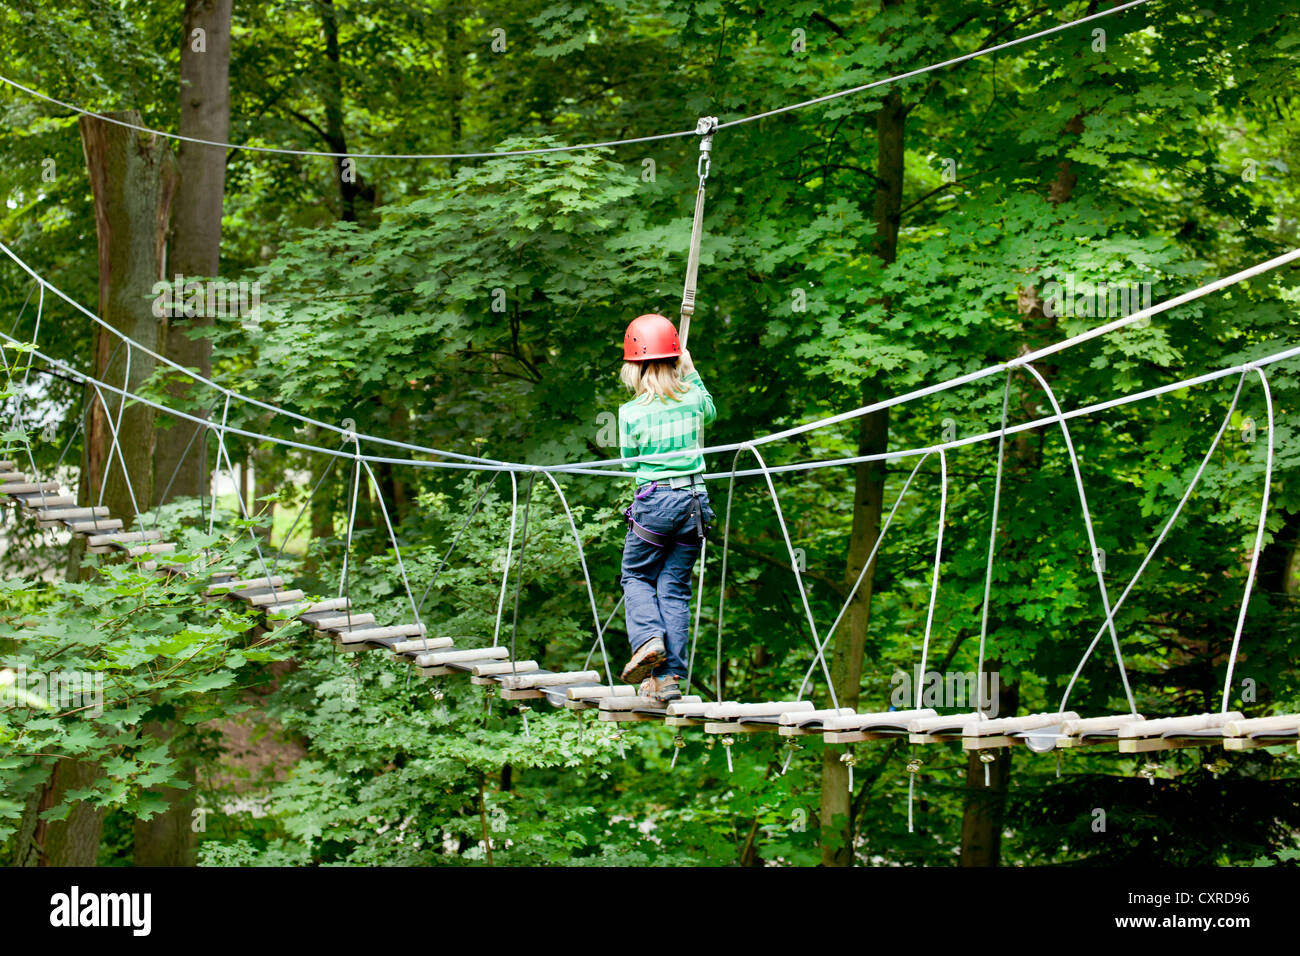 Fille, 8 ans, à l'escalade, parcours de cordes Hochseilgarten haut, Straubing, Bavaria, Germany, Europe Banque D'Images